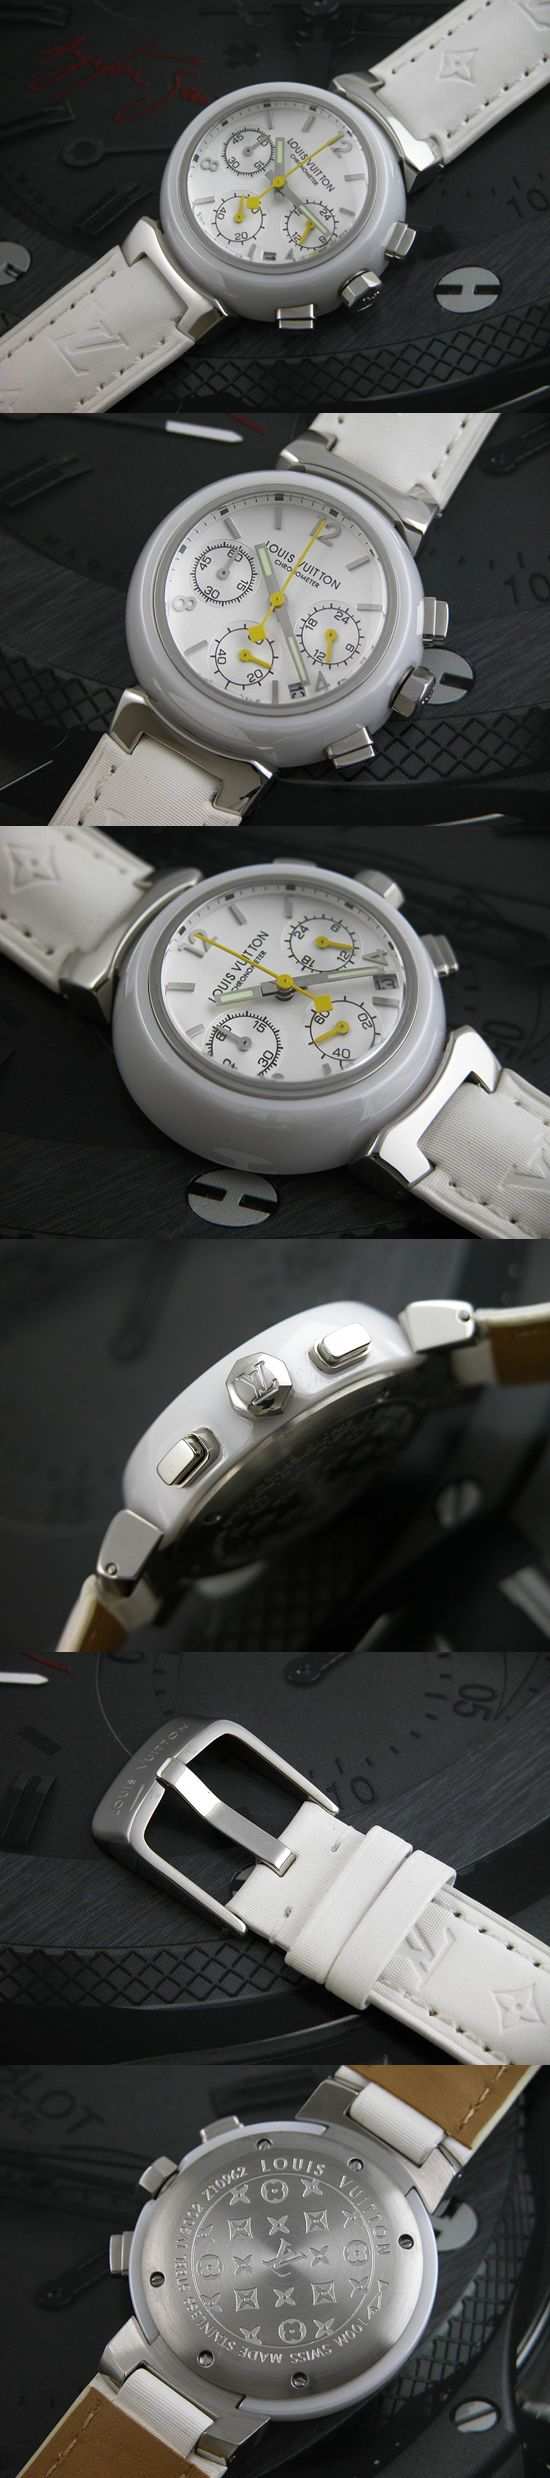 おしゃれなブランド時計がルイ ヴィトン-タンブール-LOUIS VUITTON-LV00032J-女性用を提供します.